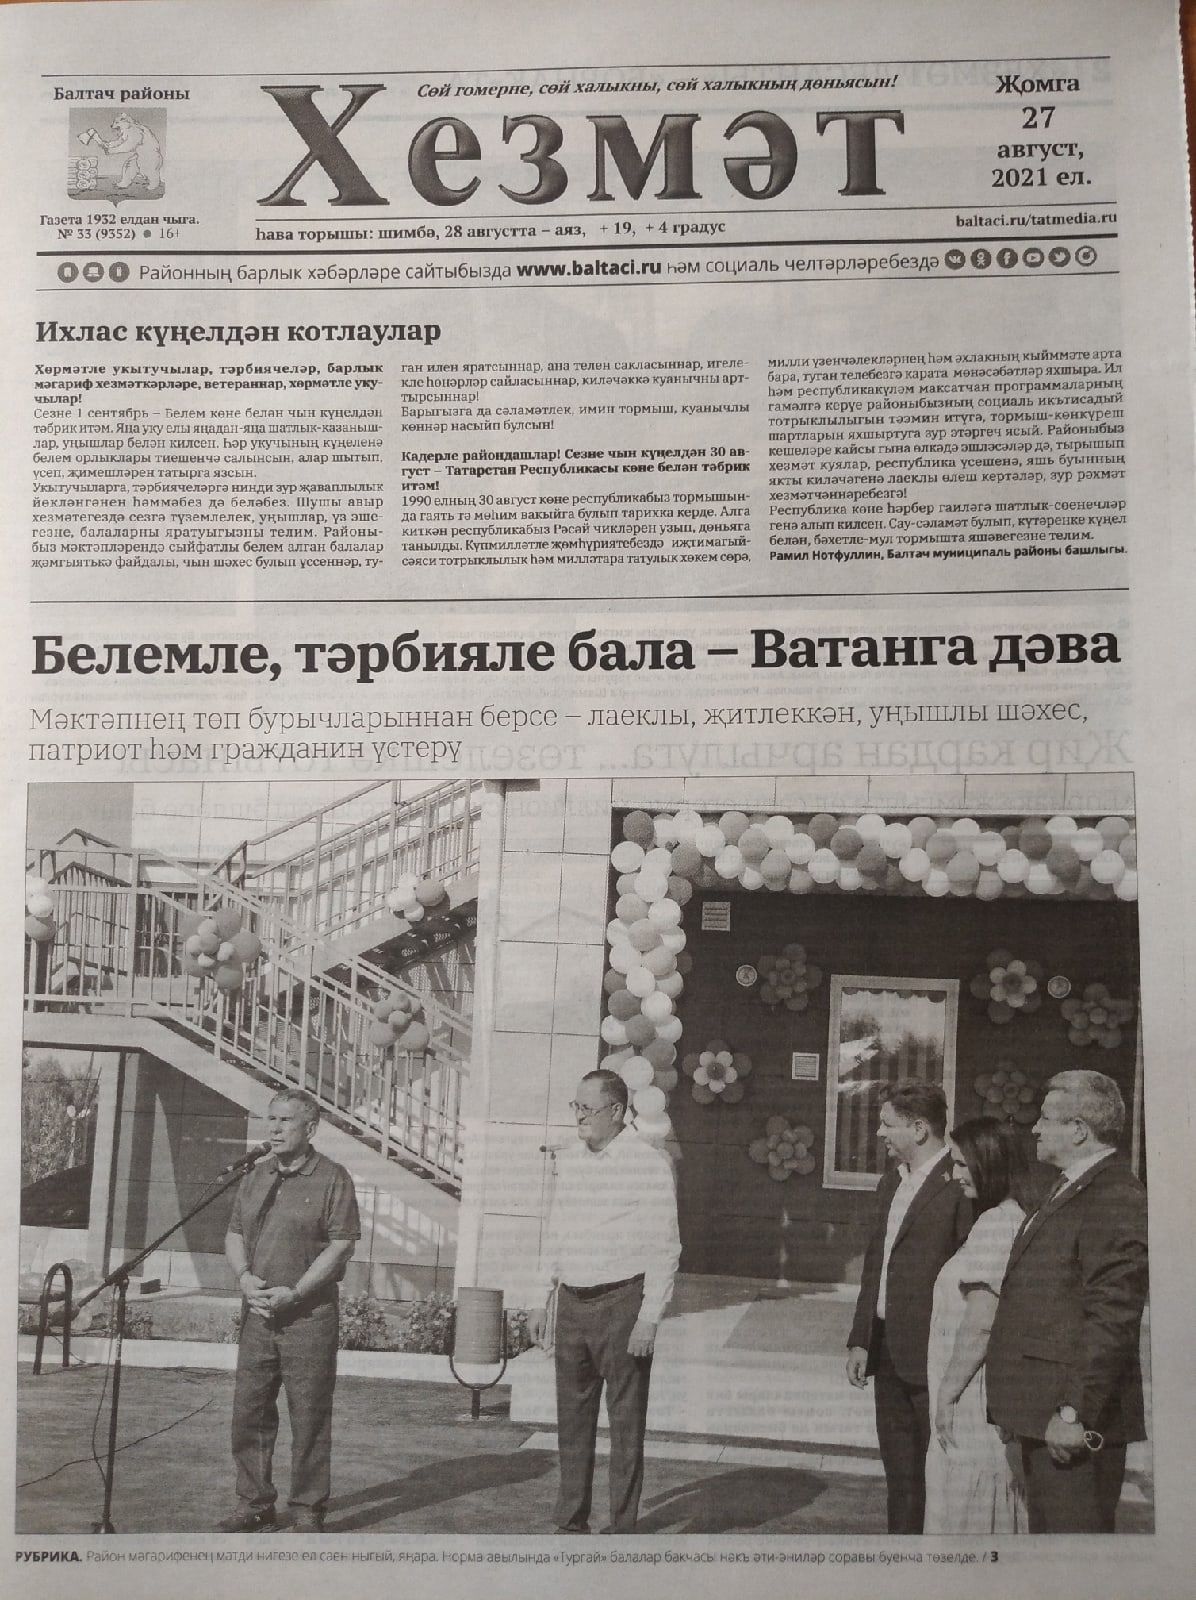 Газетаның 33нче санында (27 август, 2021 ел) чыгарылган белдерүләр һәм рекламалар